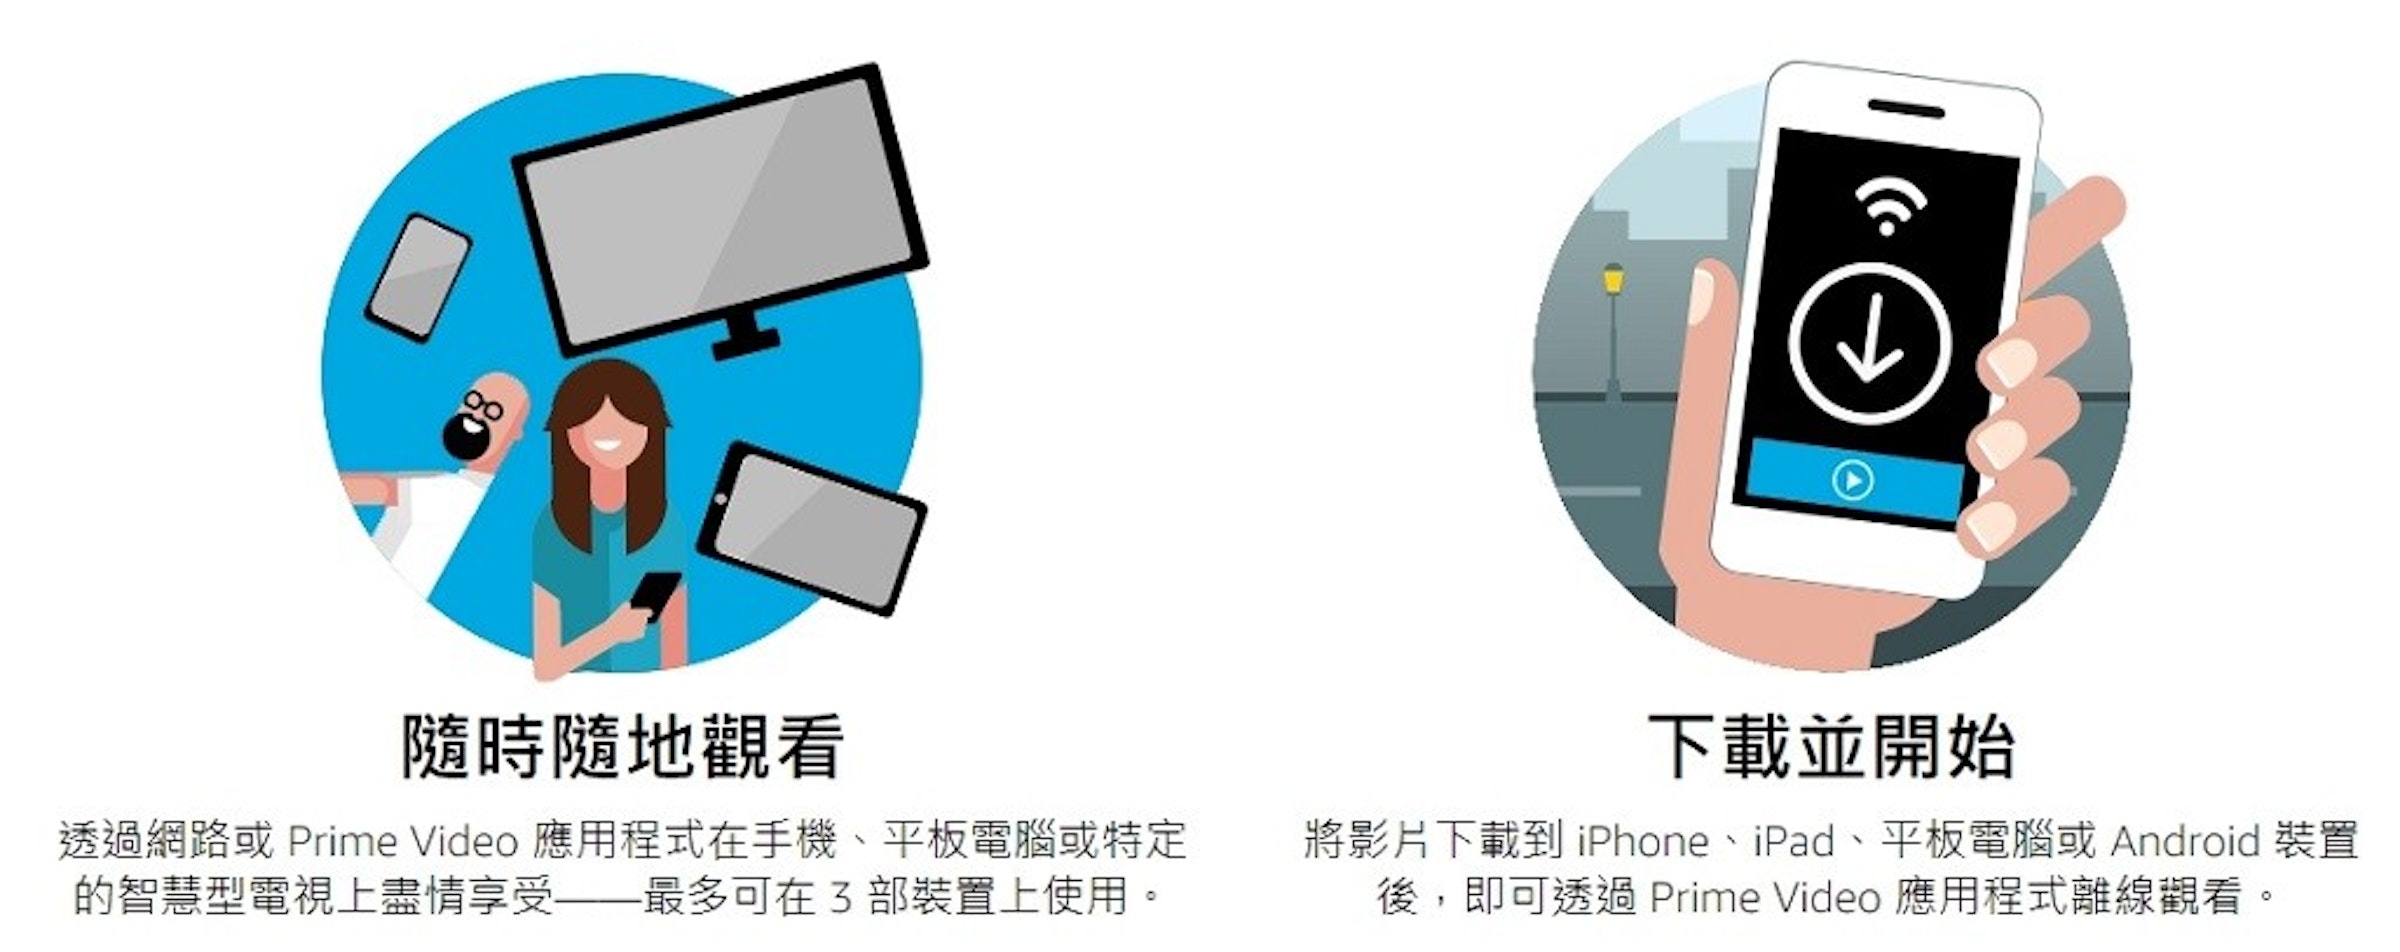 台灣amazon Prime Video訂閱方法 方案費用 中文字幕 語言支援 取消訂閱教學 裝置 Cool3c